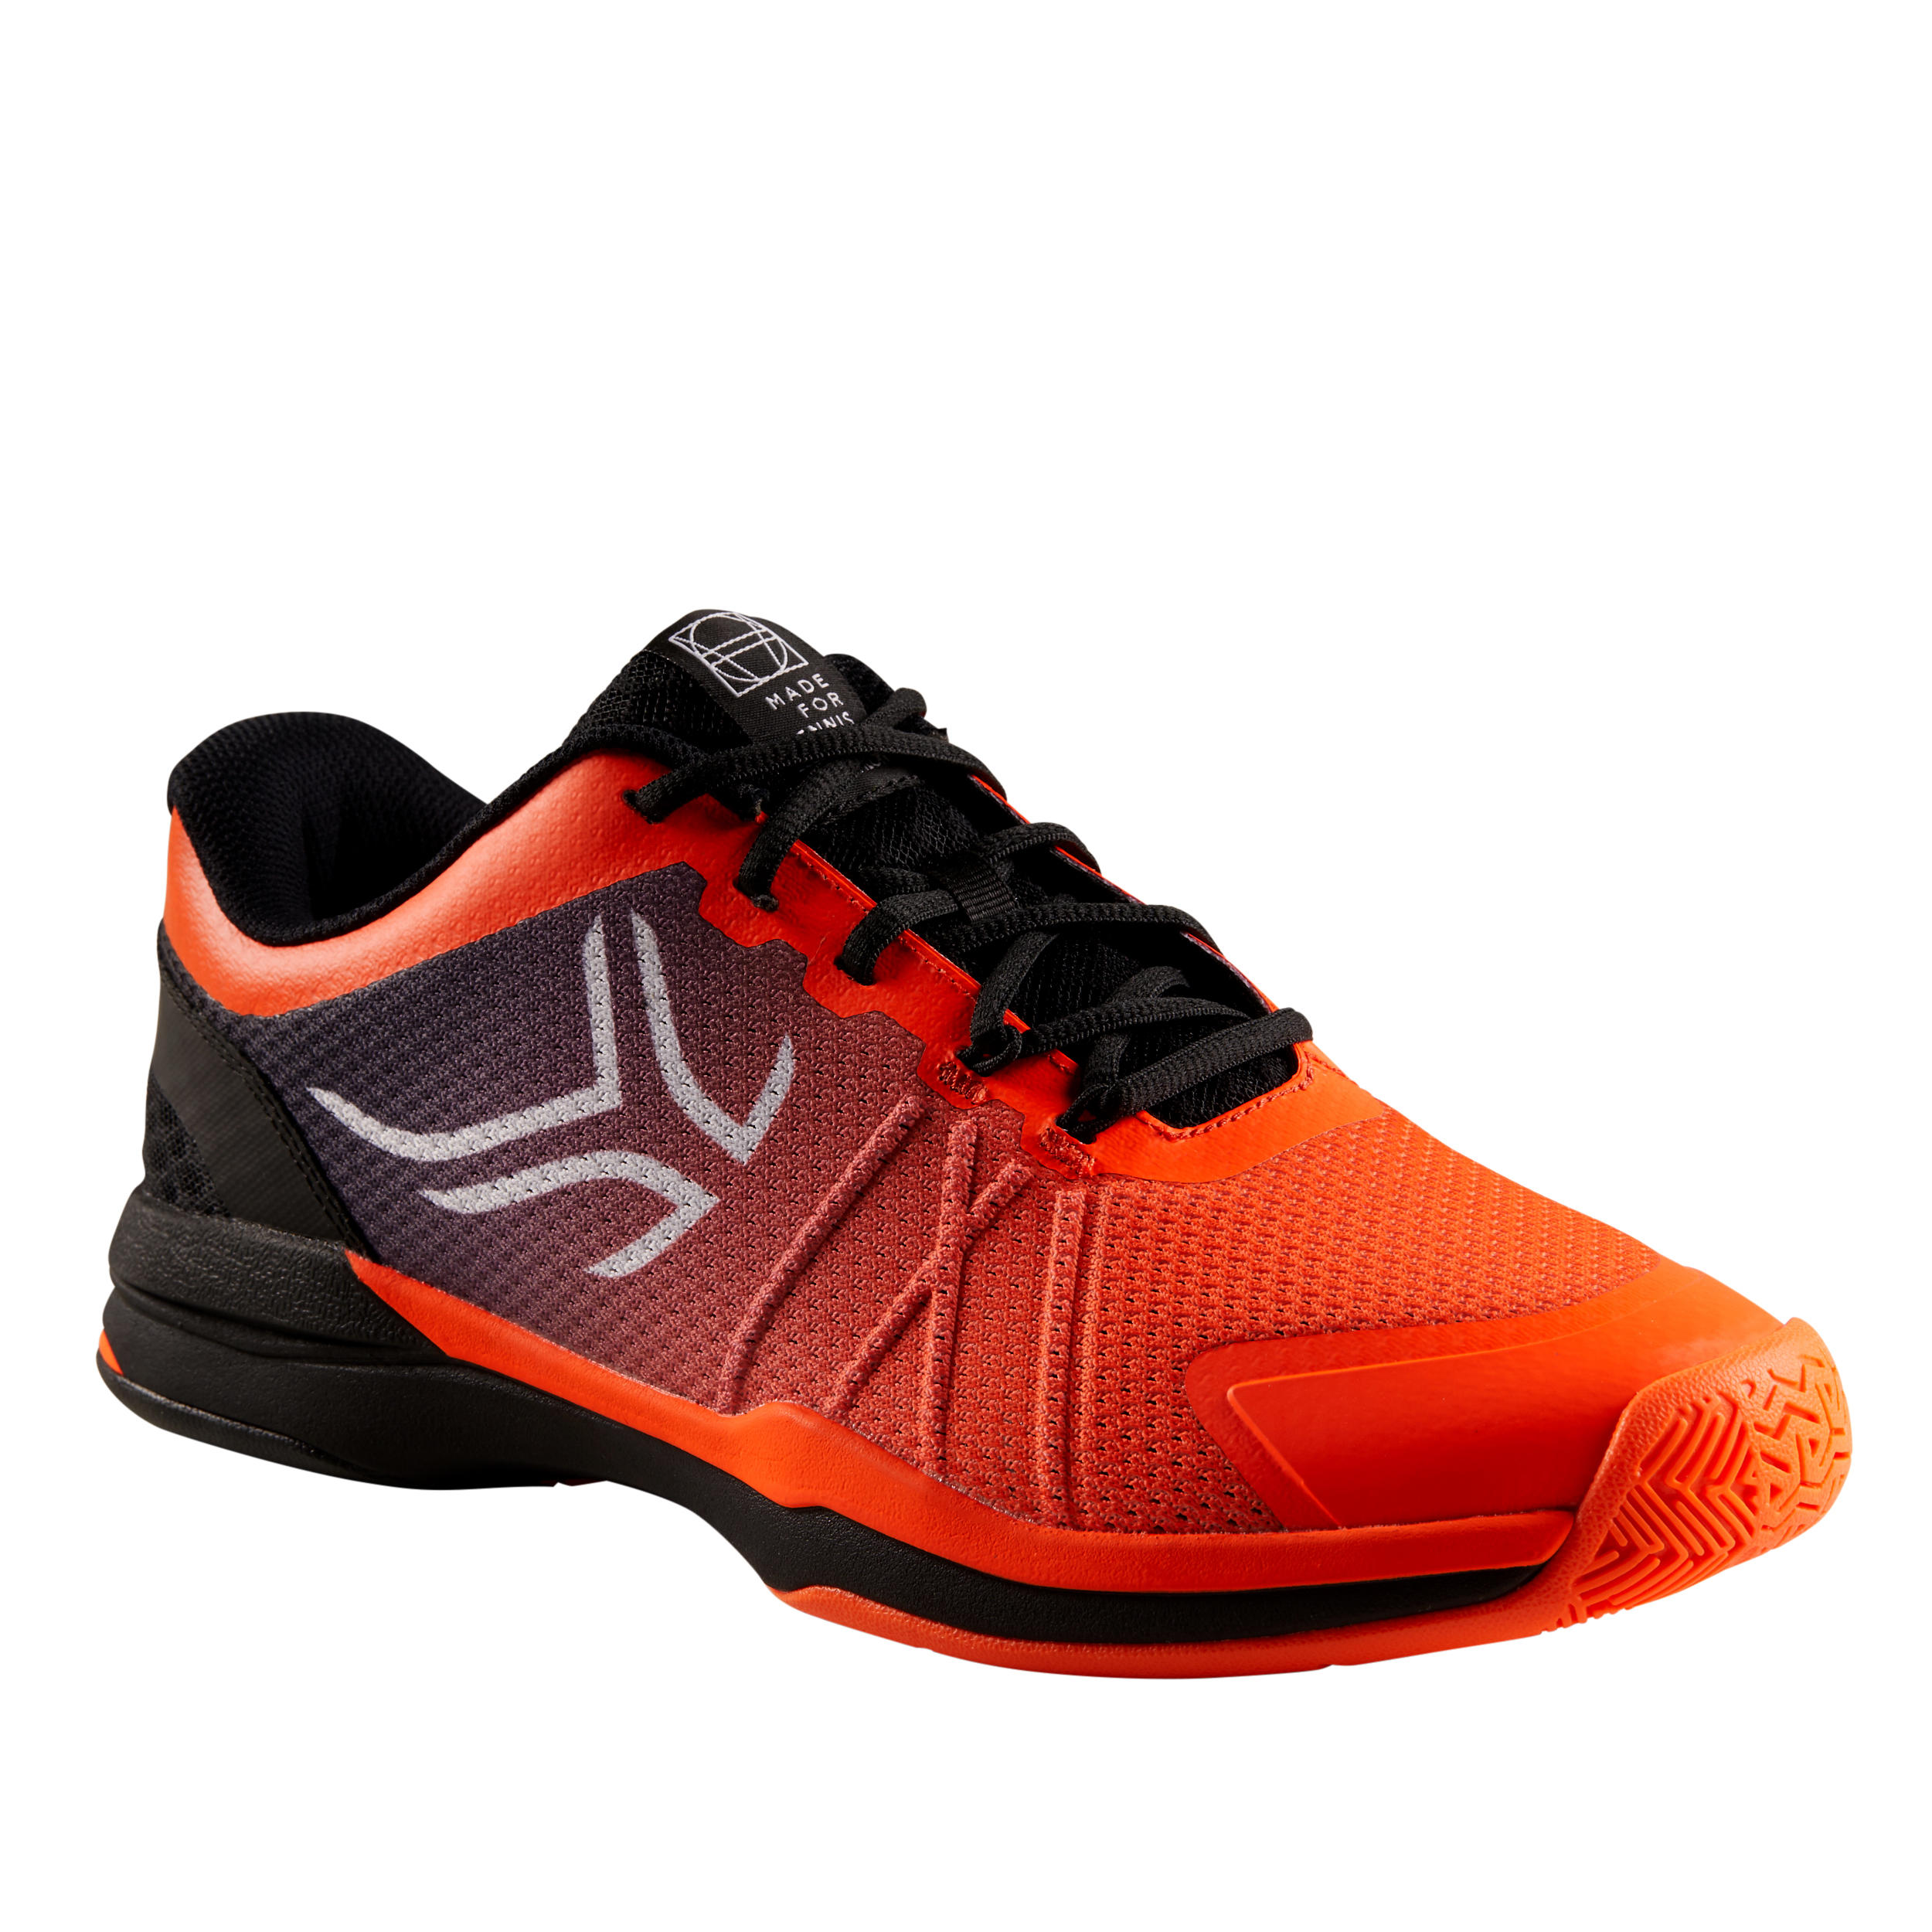 chaussures de tennis homme ts590 orange noir multi court - artengo